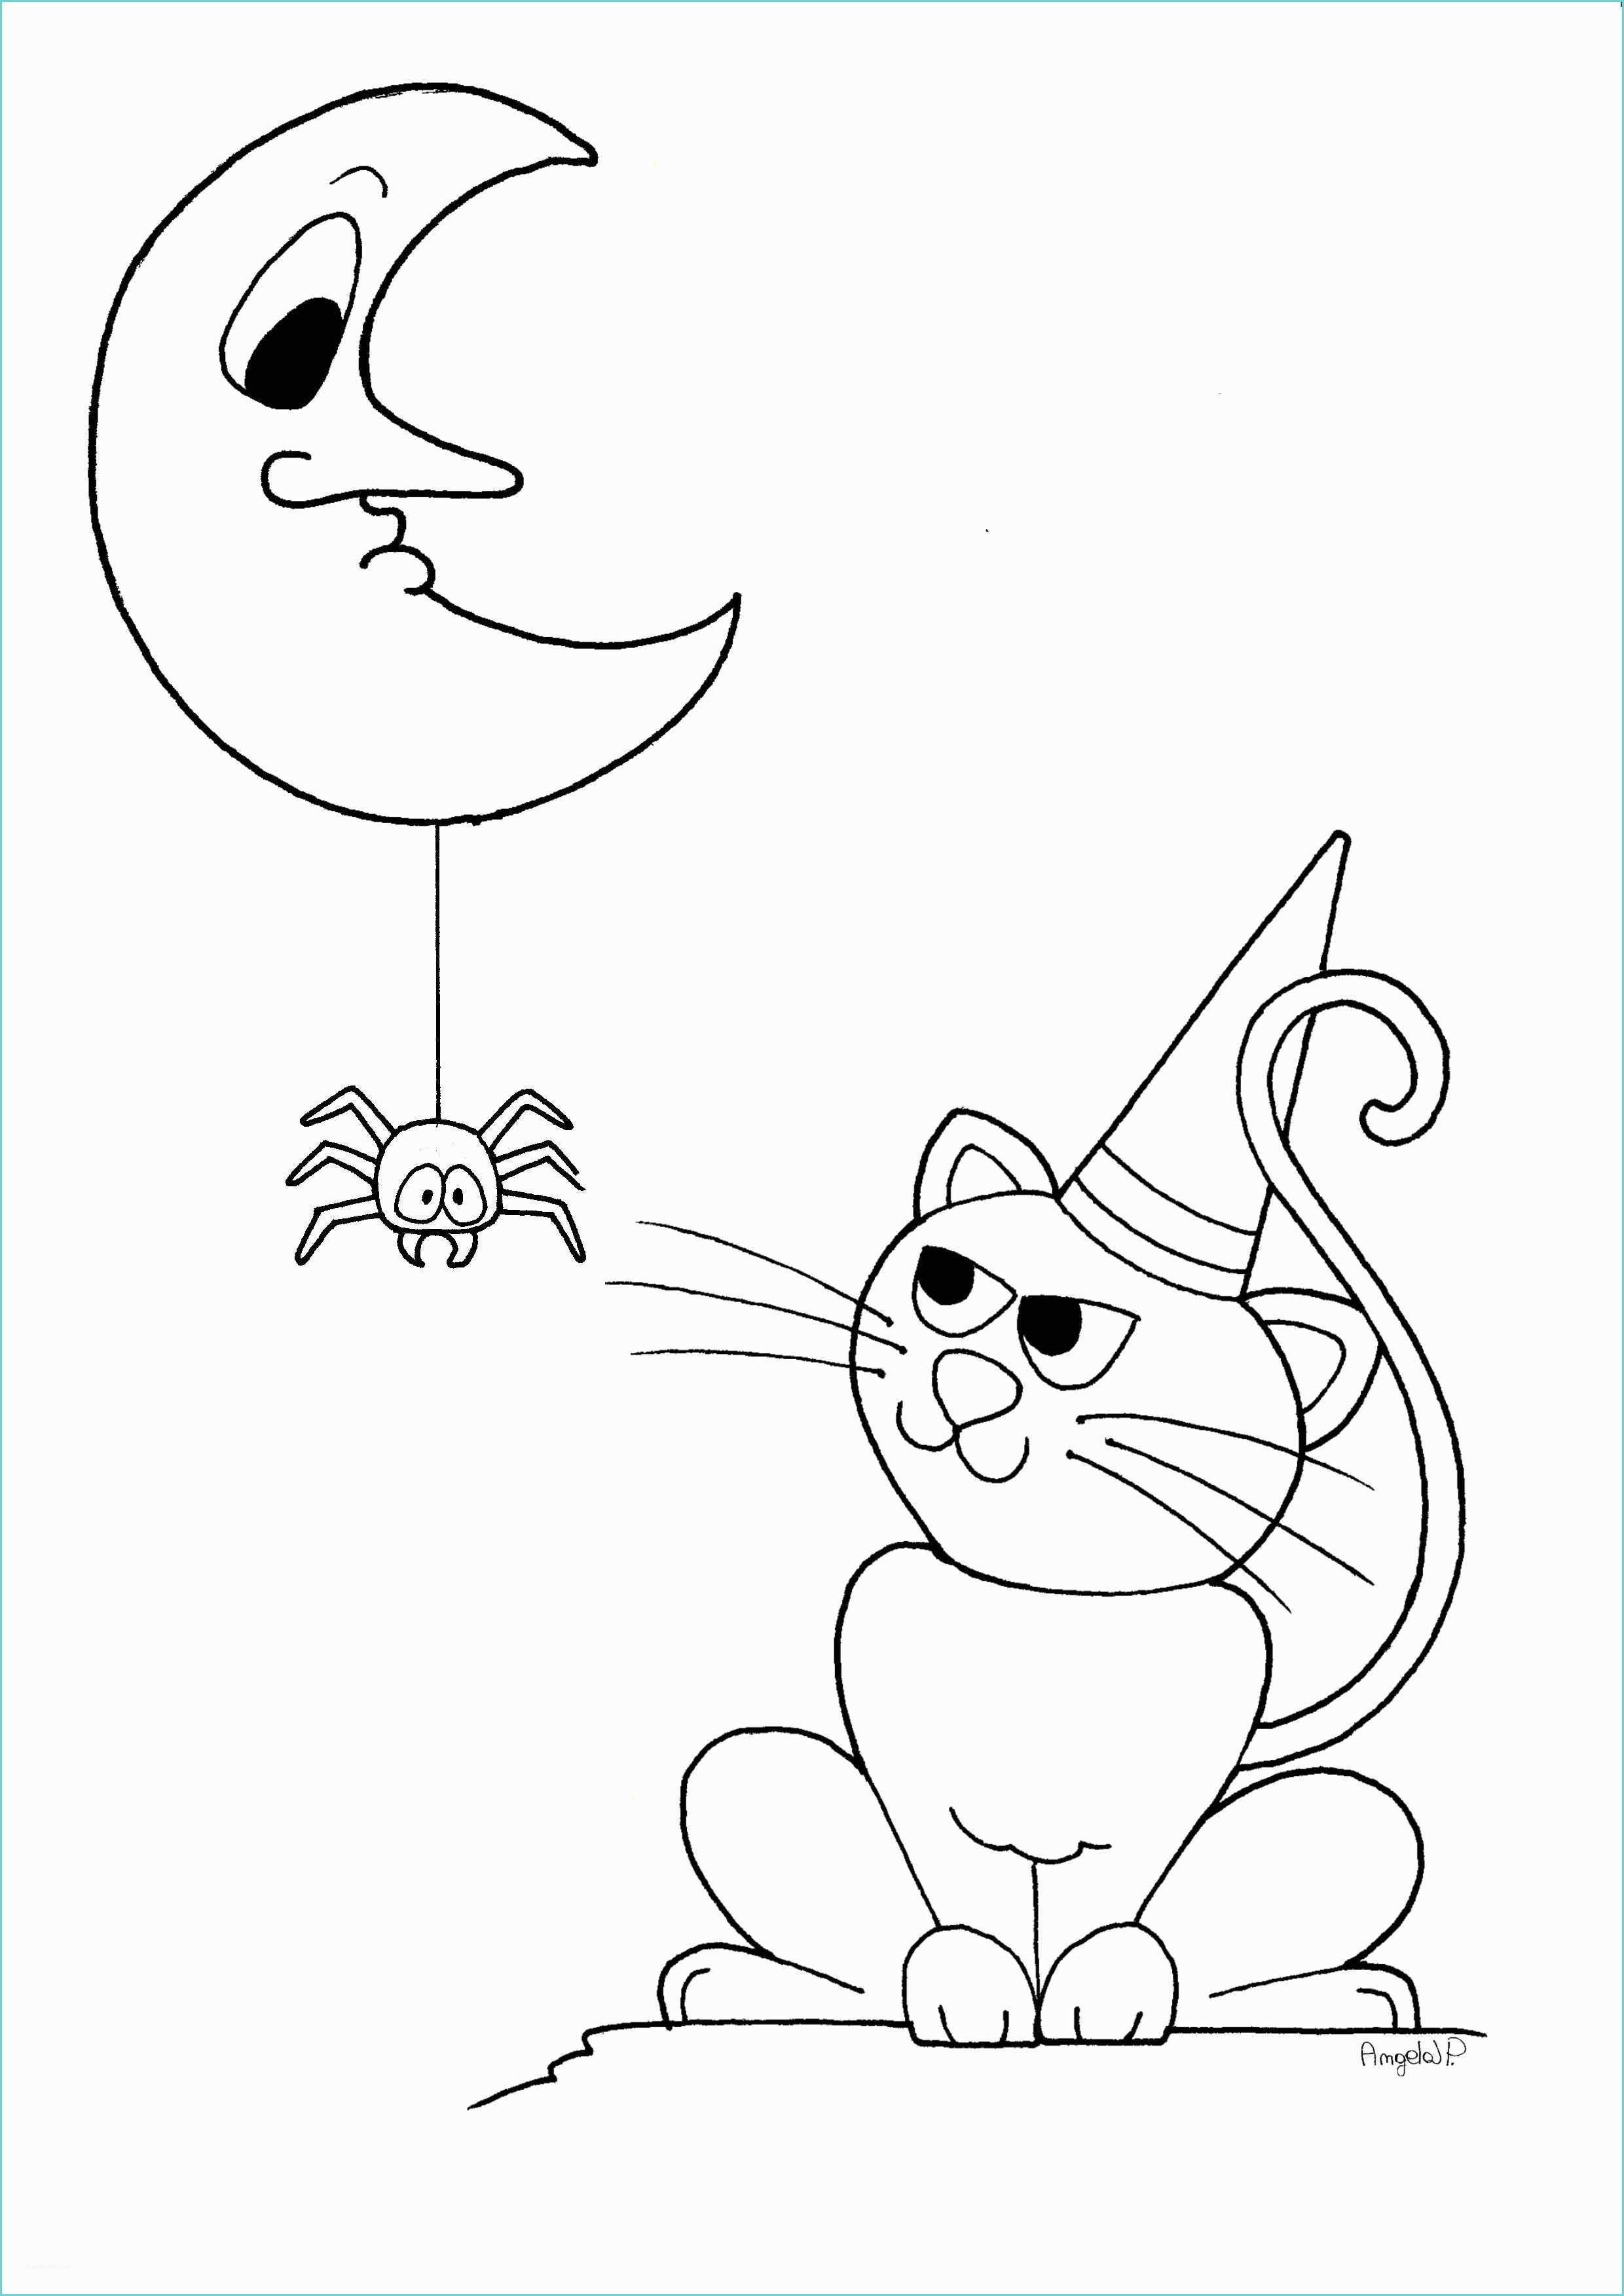 Disegni Geometrici Per Bambini Halloween Disegni Per Bambini Da Stampare Gratis